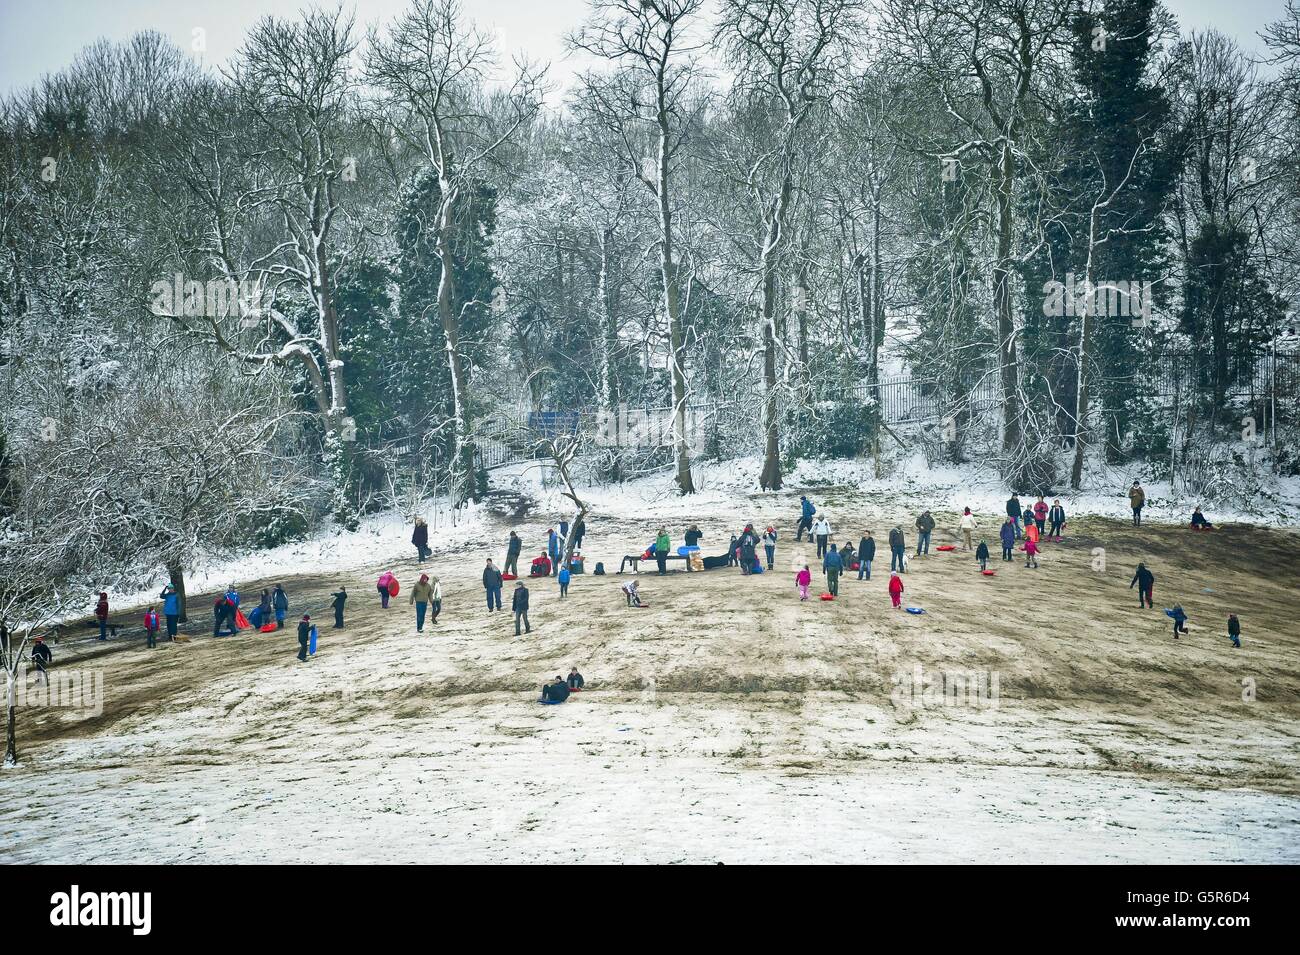 La nieve lentamente da paso al barro mientras la gente disfruta de trineos en Arnos Park, Brislington, Bristol, donde la nieve cayó antes del fin de semana y las temperaturas heladas han conservado la nieve. Foto de stock